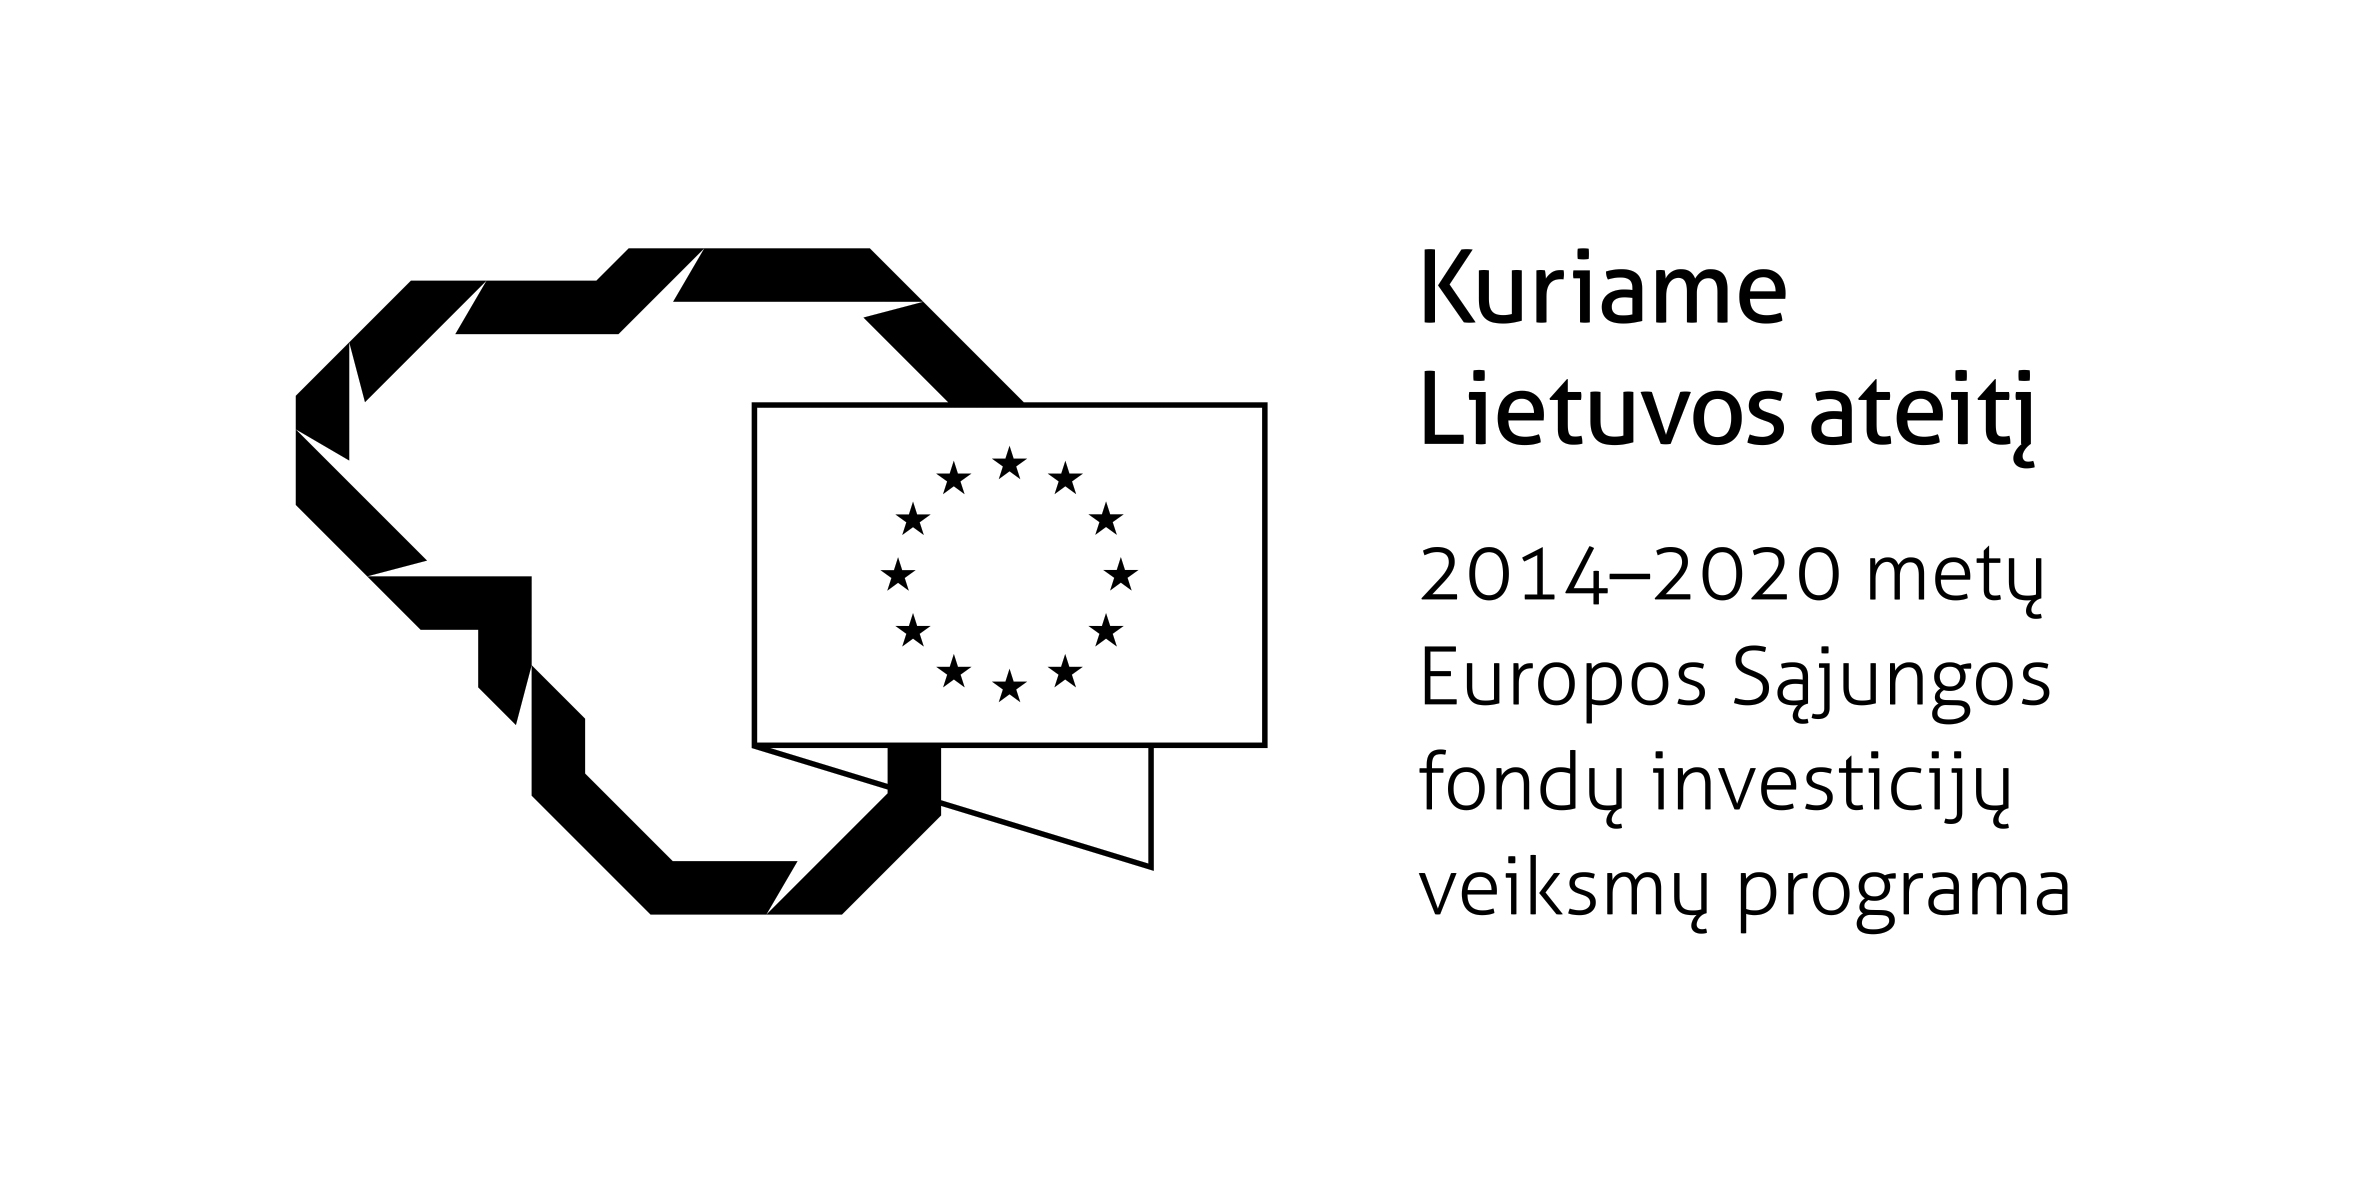 Eu 2014-2020 financing logo